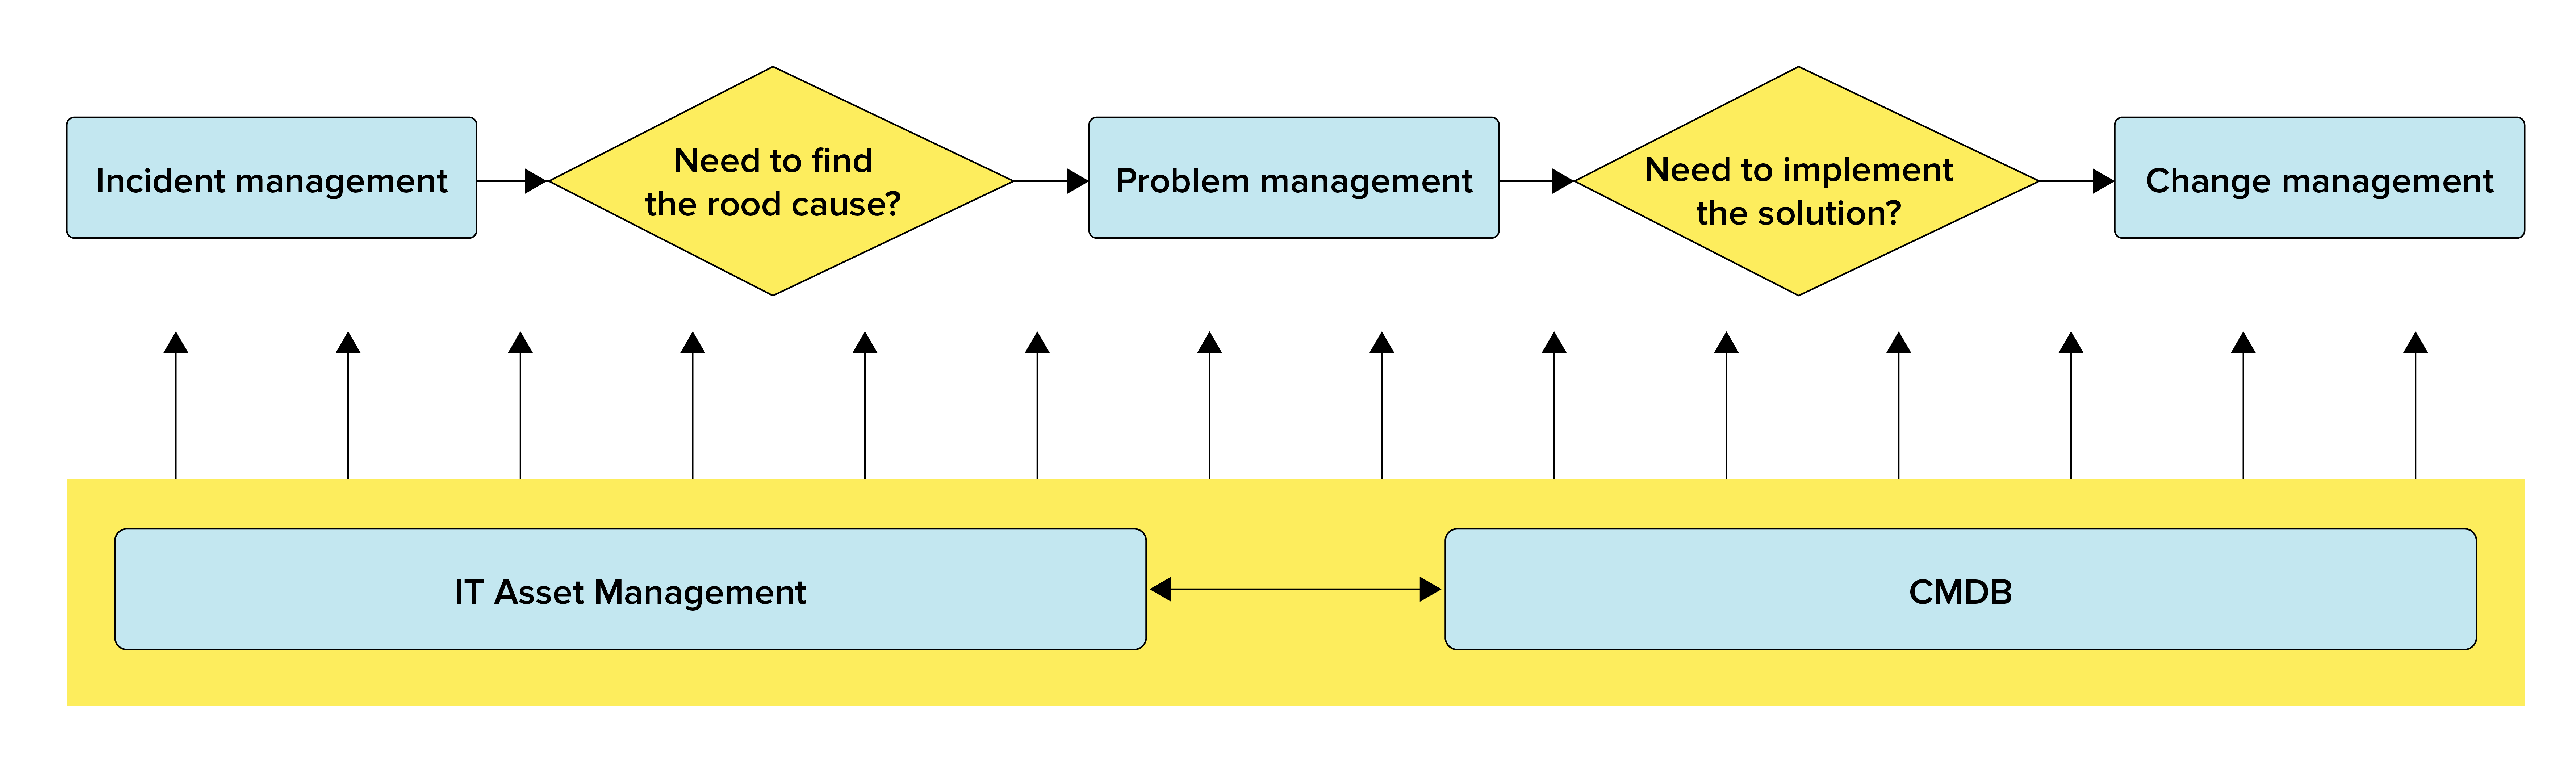 ITIL过程和问题管理之间的关系